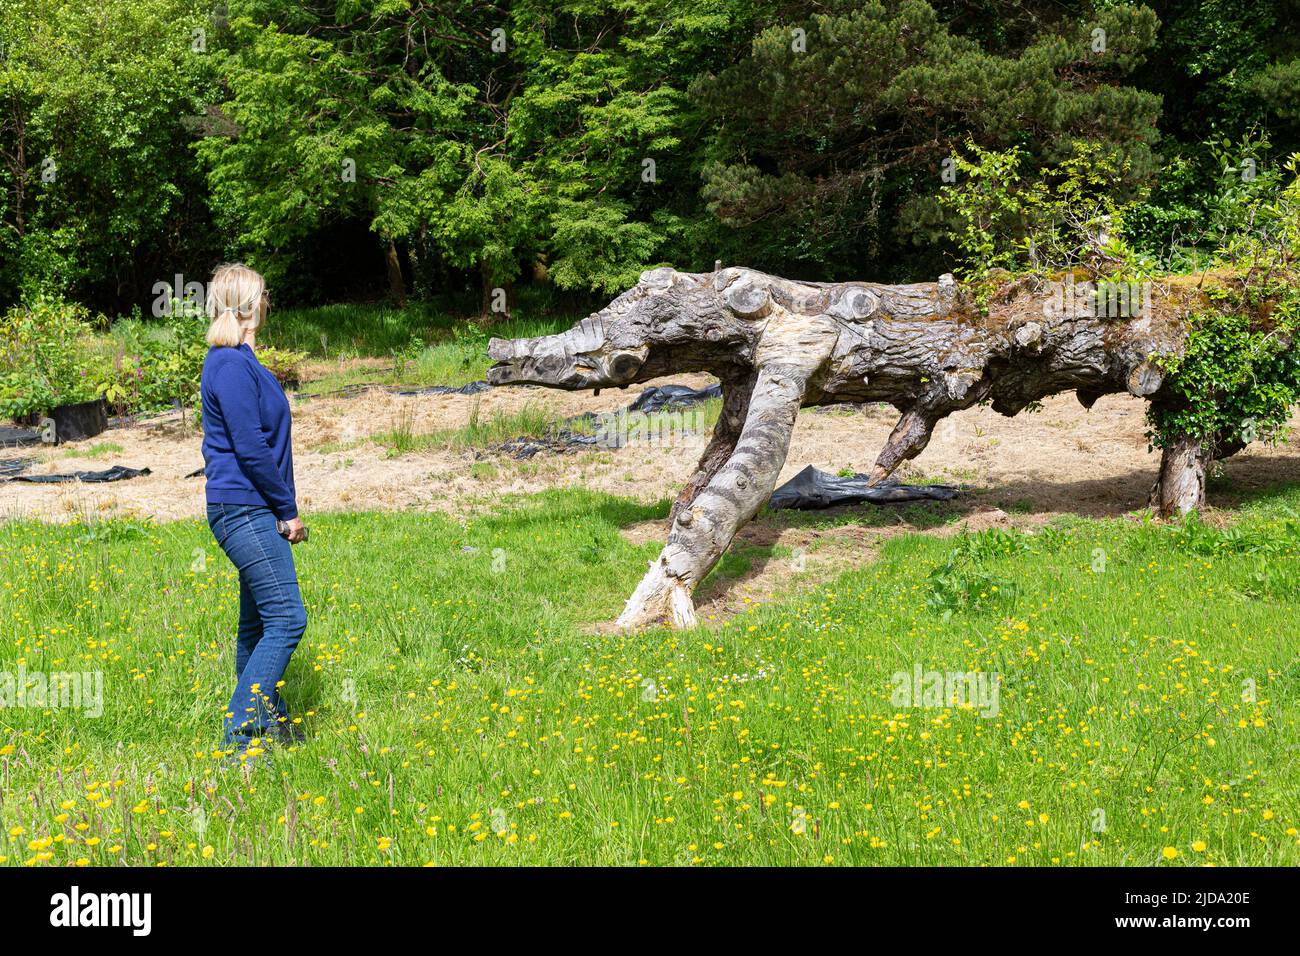 Dinosaur tree carvings at Kells Bay Gardens, County Kerry, Ireland Stock Photo